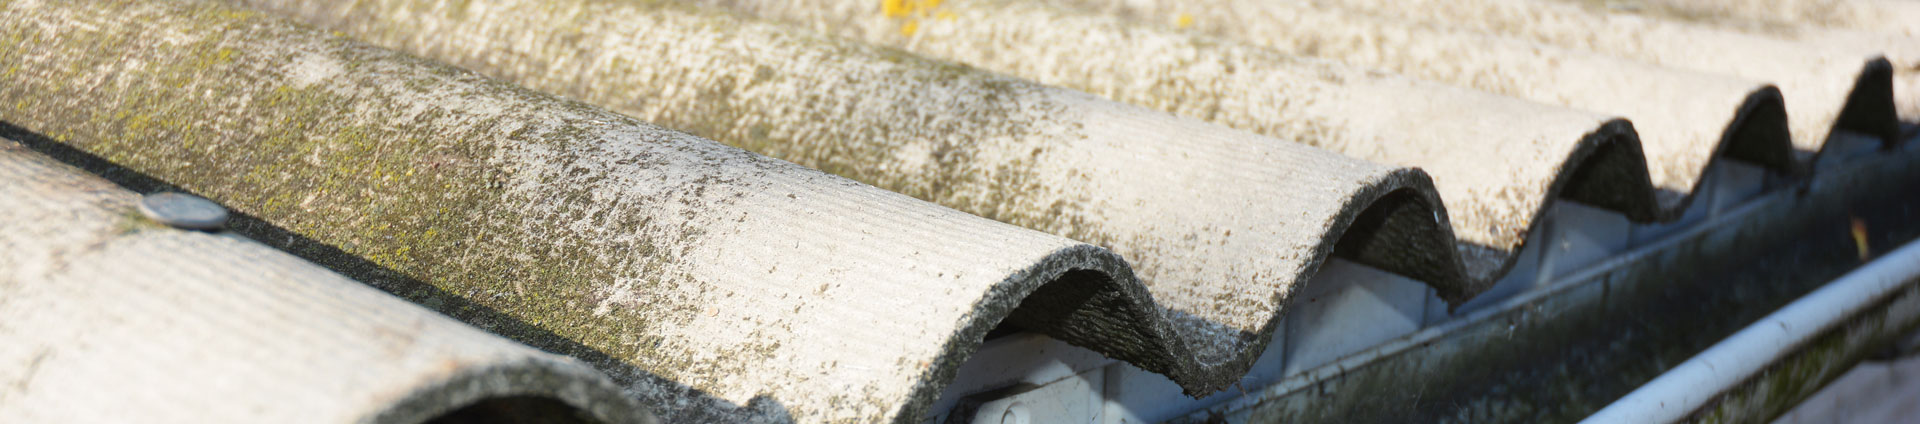 एस्बेस्टस छत की हेडर छवि